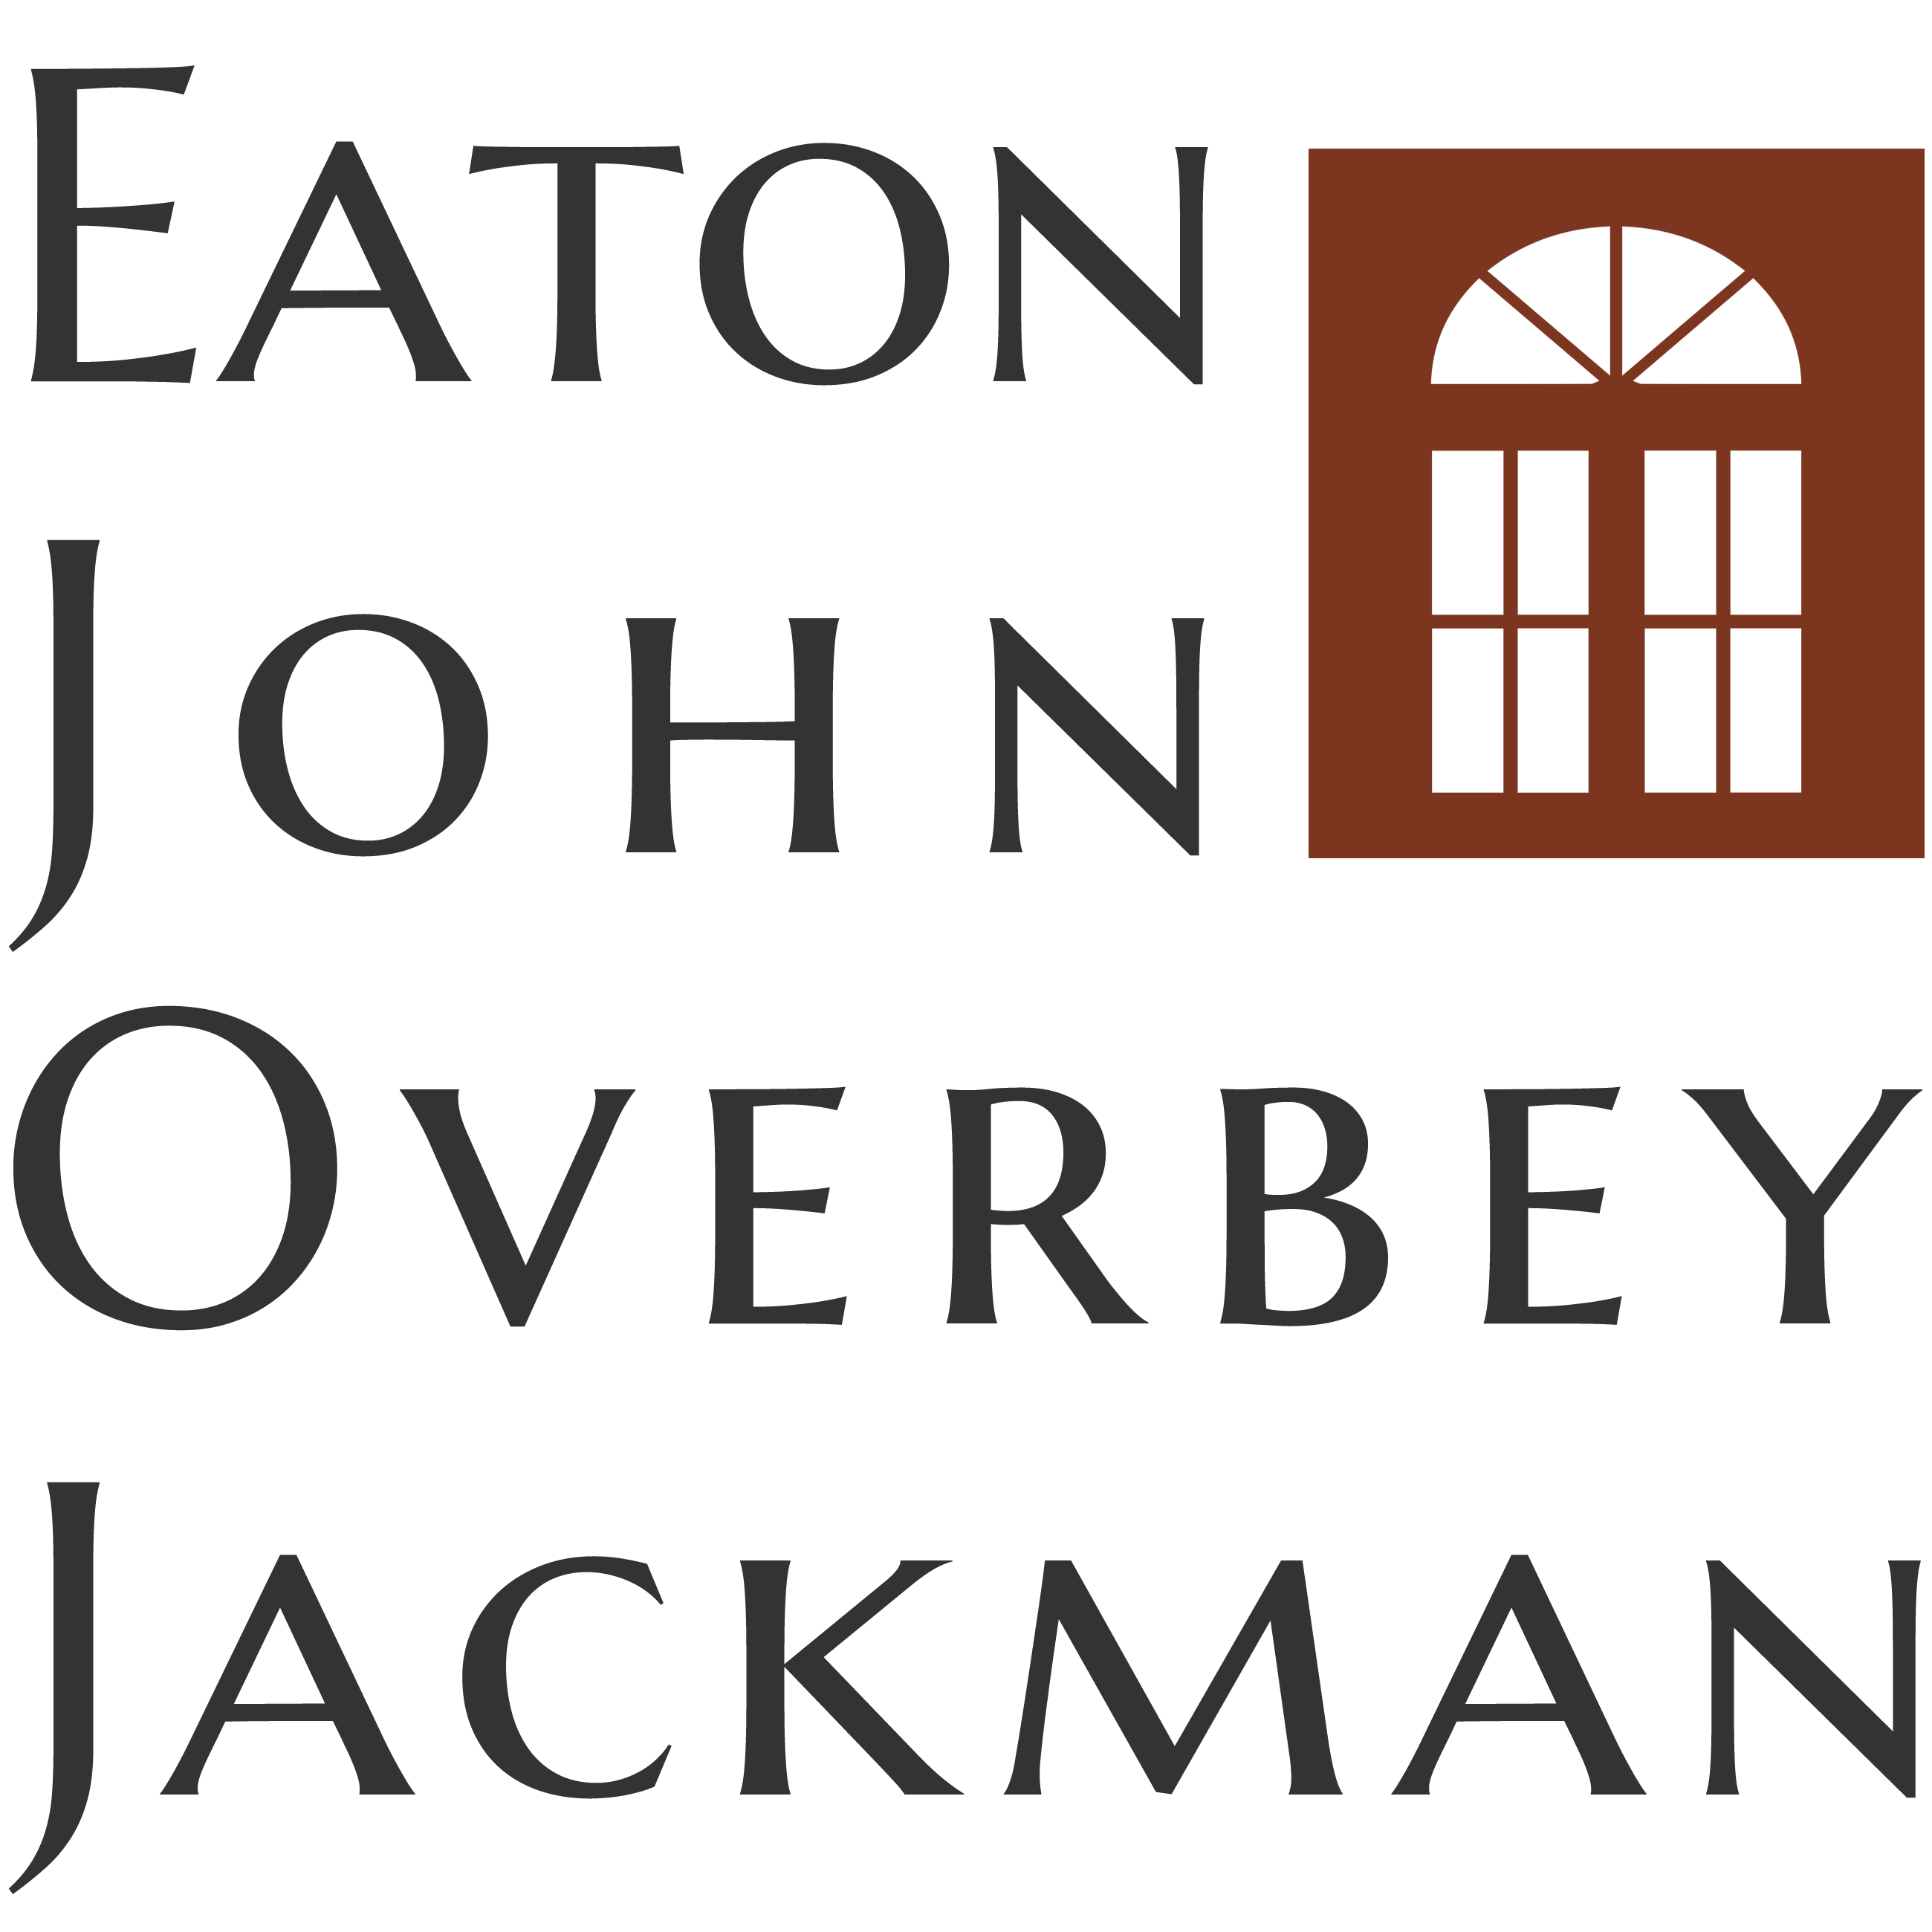 7 Eaton John Overbey Jackman